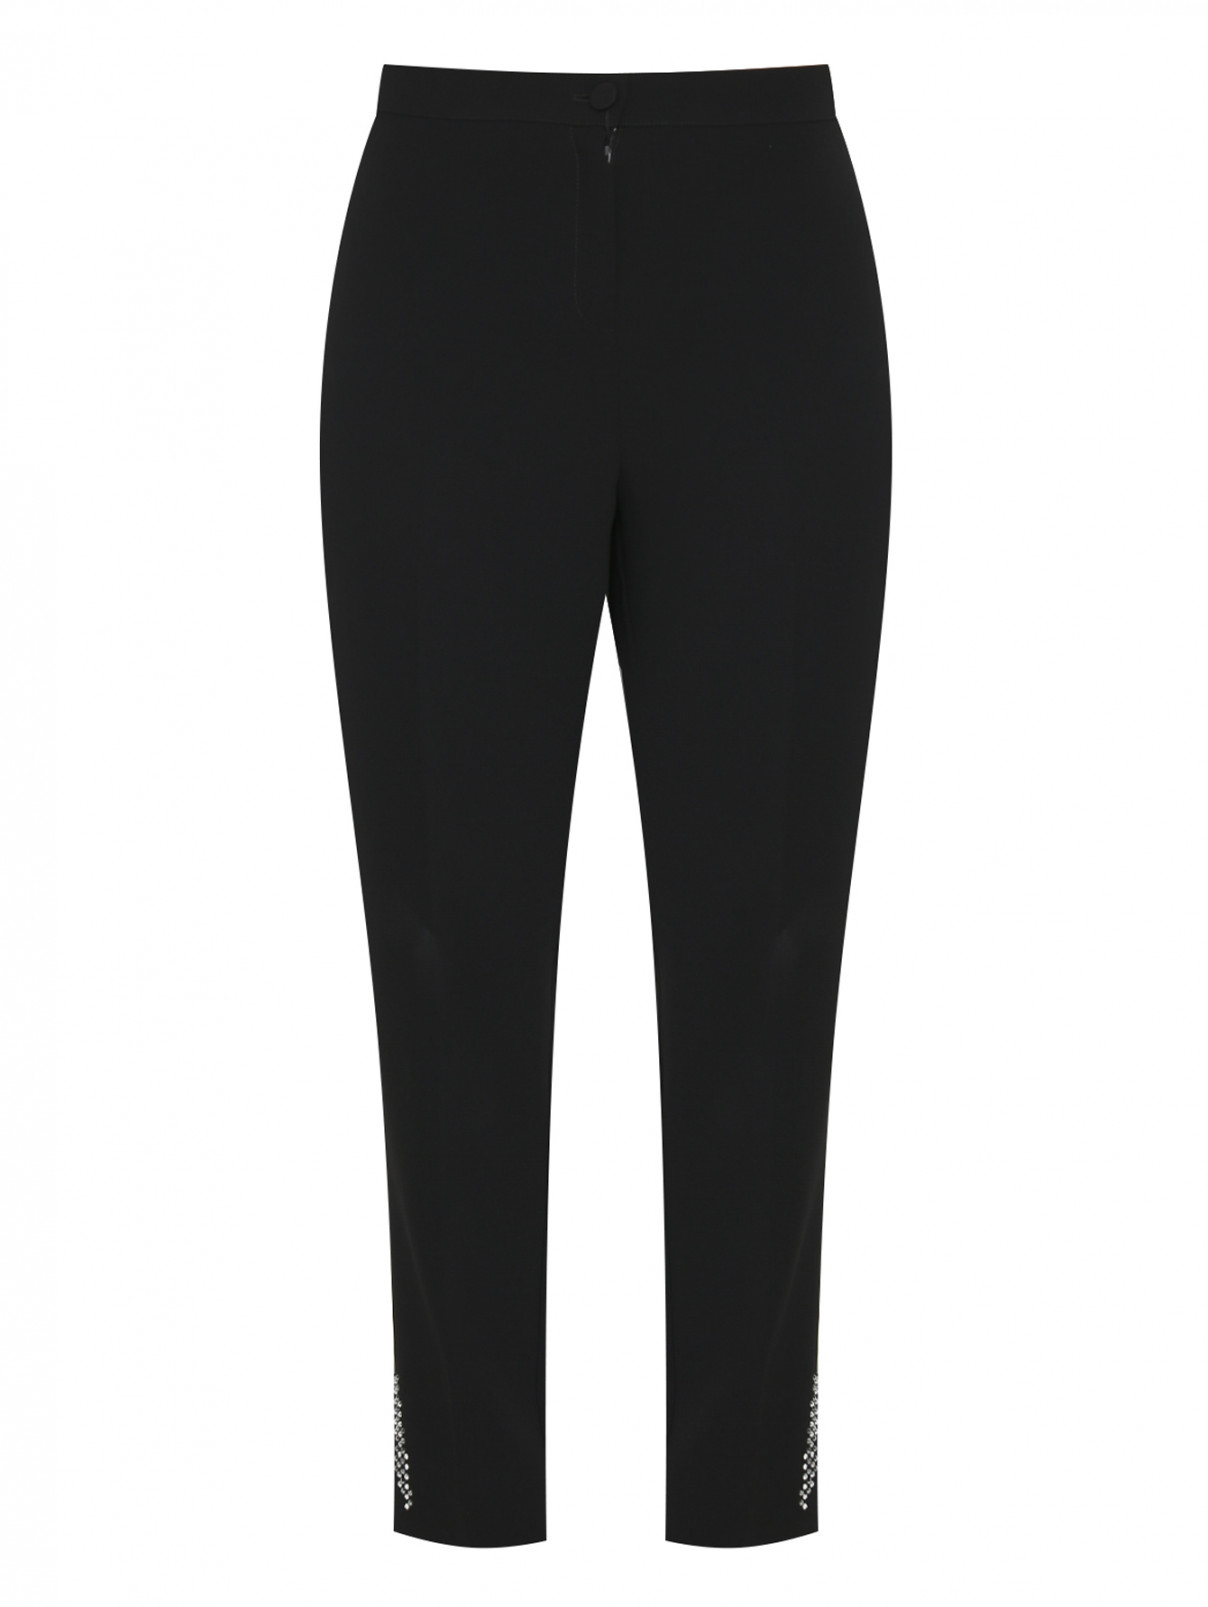 Зауженные брюки с аппликациями из страз Marina Rinaldi  –  Общий вид  – Цвет:  Черный